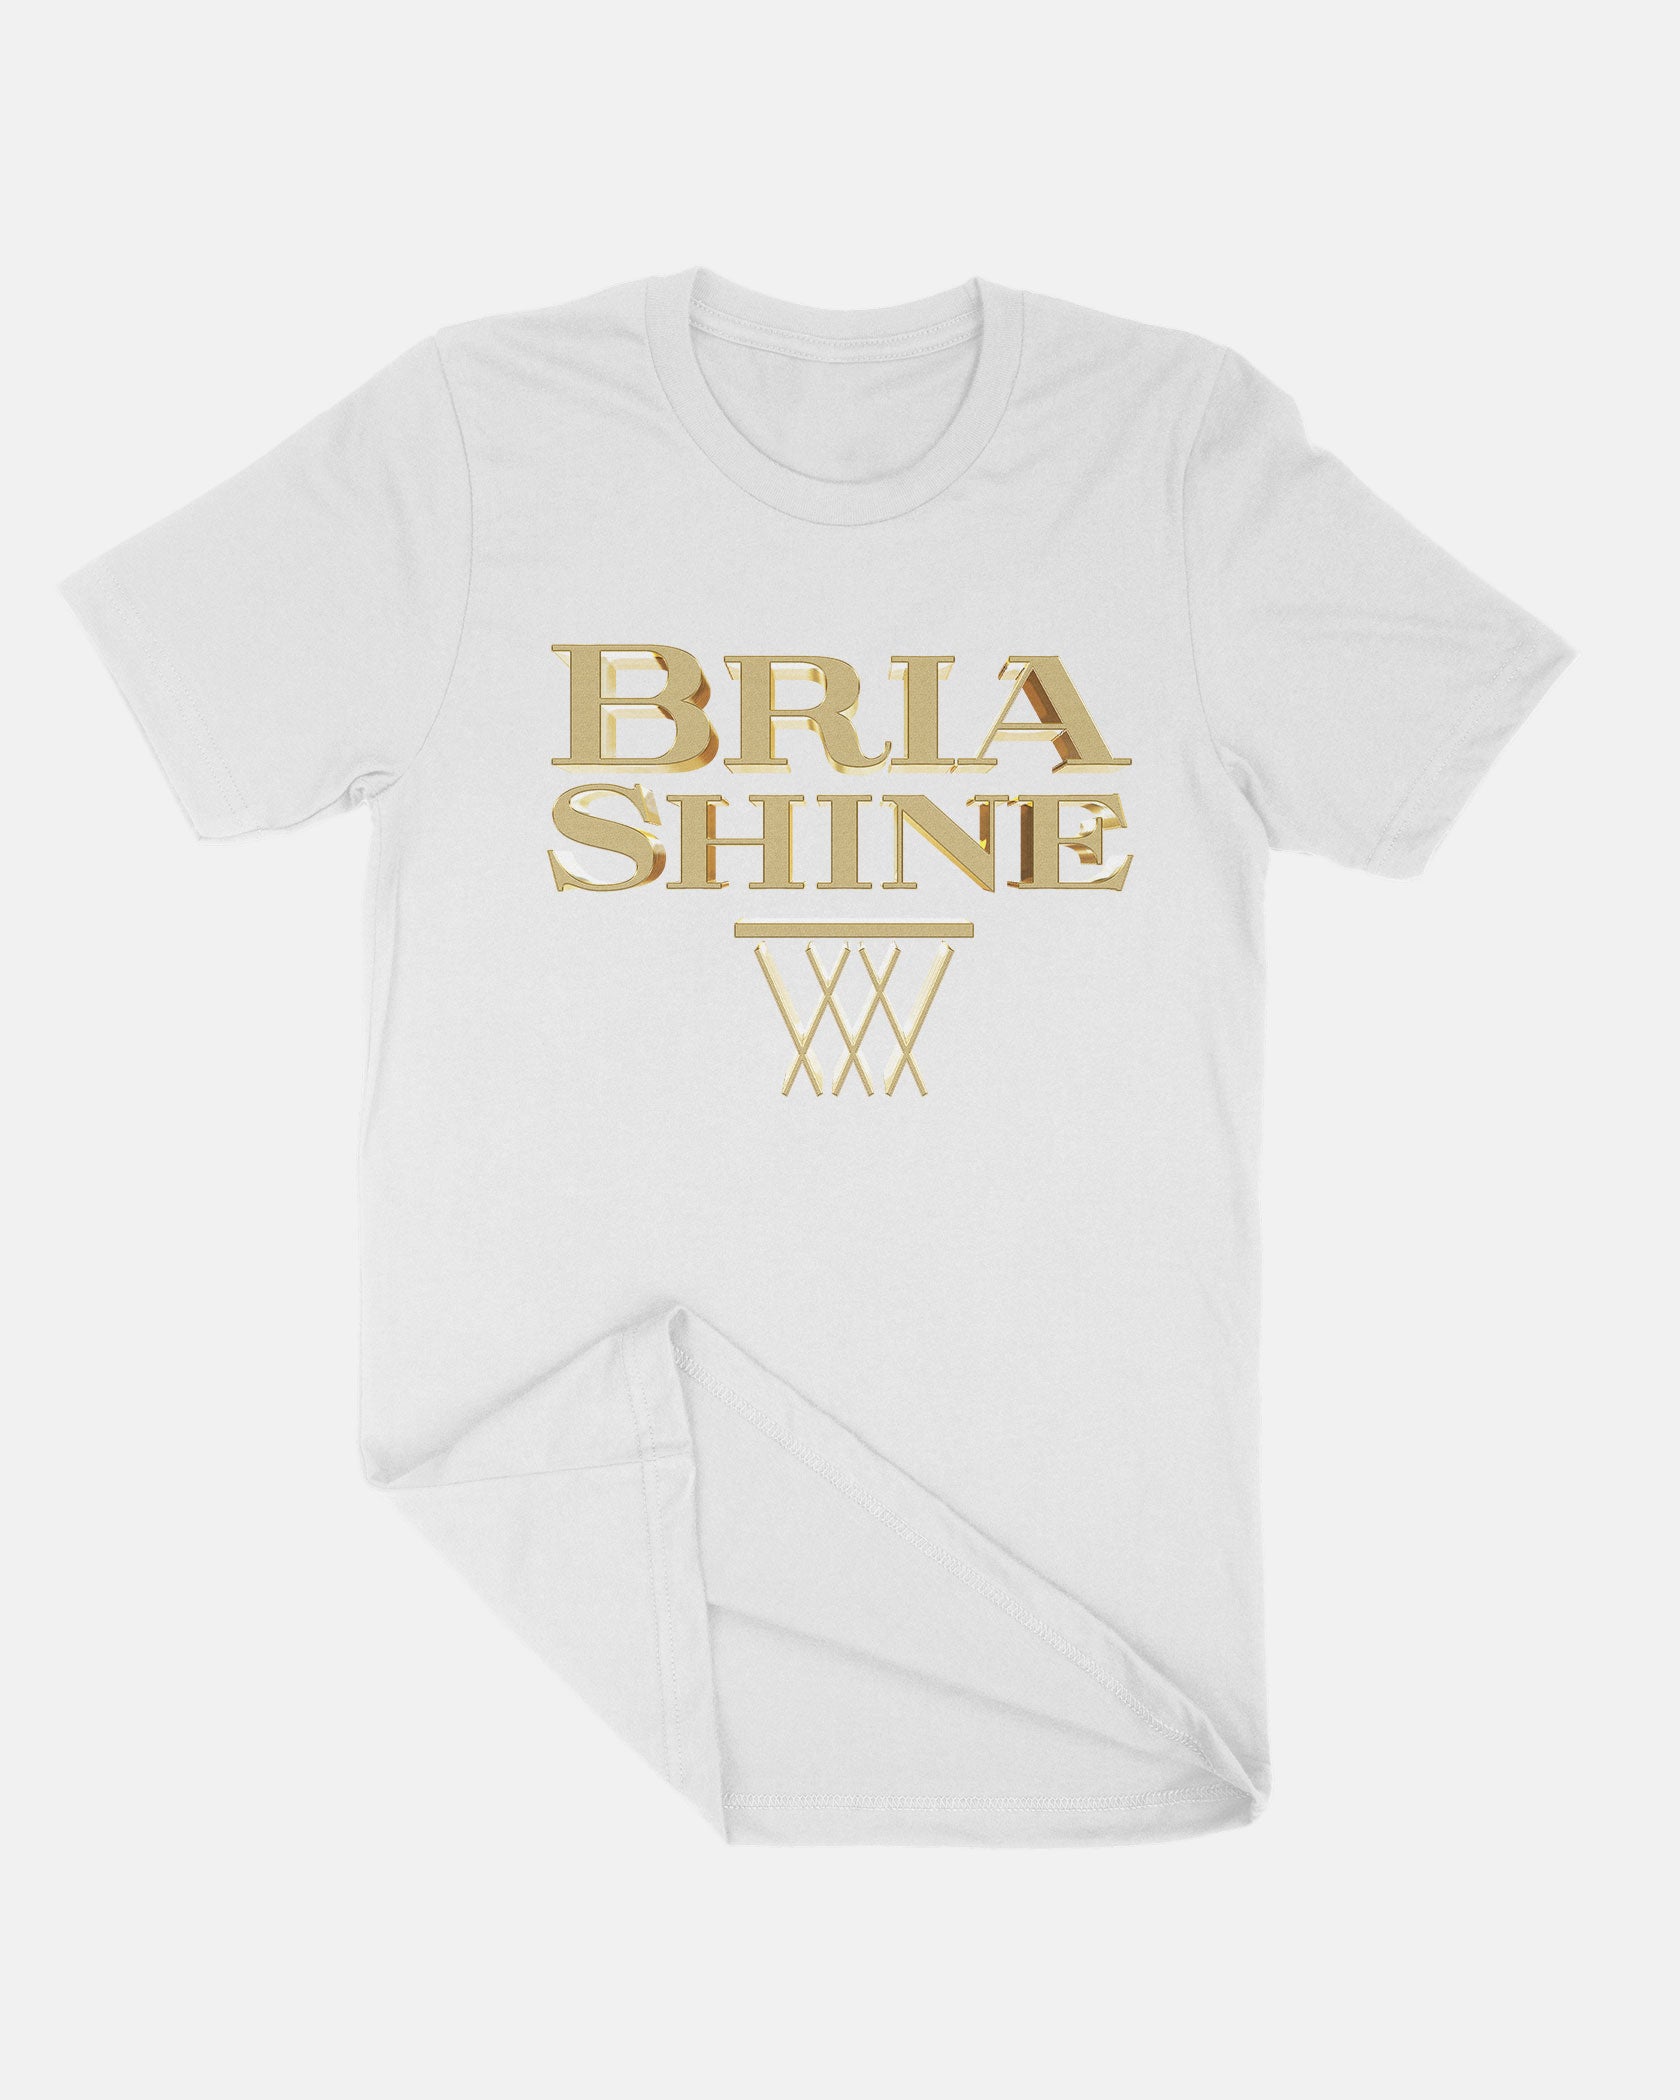 Bria Shine Shirt 002